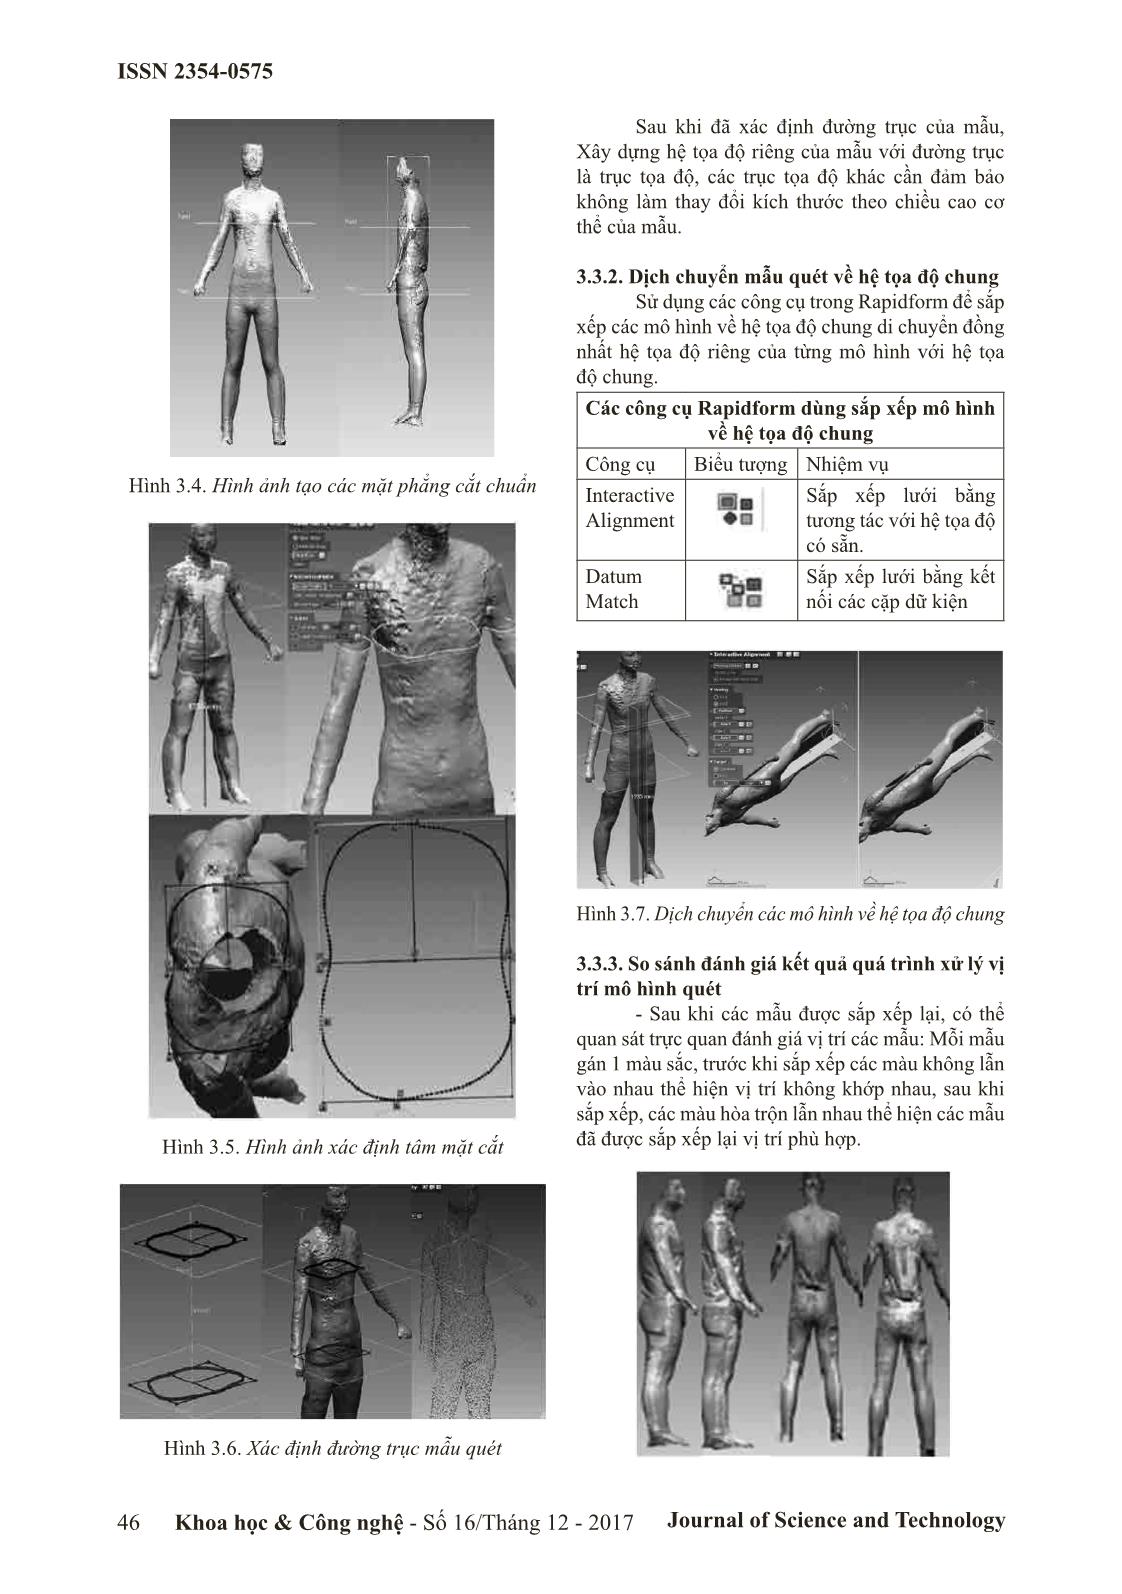 Xử lý dữ liệu quét mẫu cơ thể người phục vụ thiết kế quân áo 3 chiều trang 4